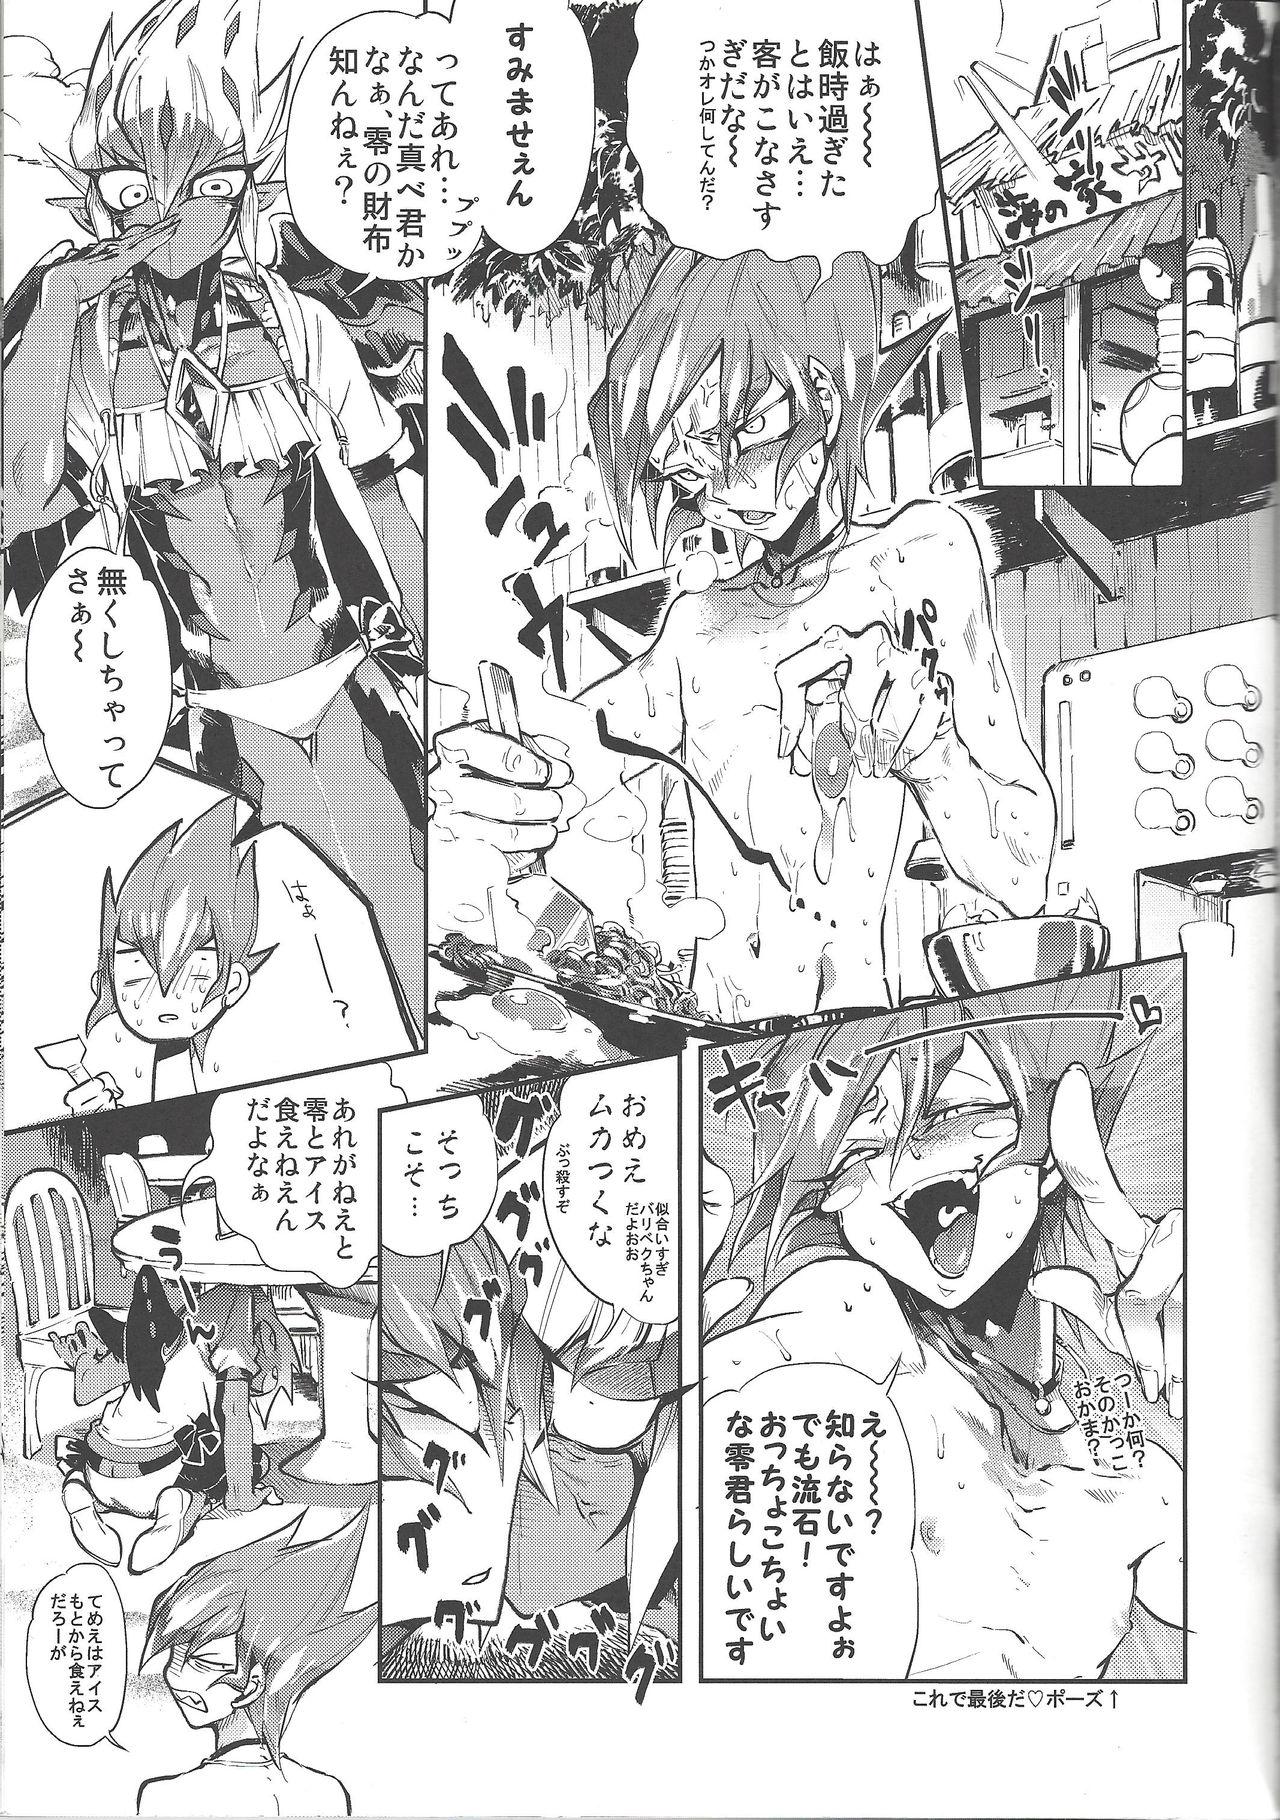 Mamando XXXX no Vec-chan 3 - Yu-gi-oh zexal Asstomouth - Page 4